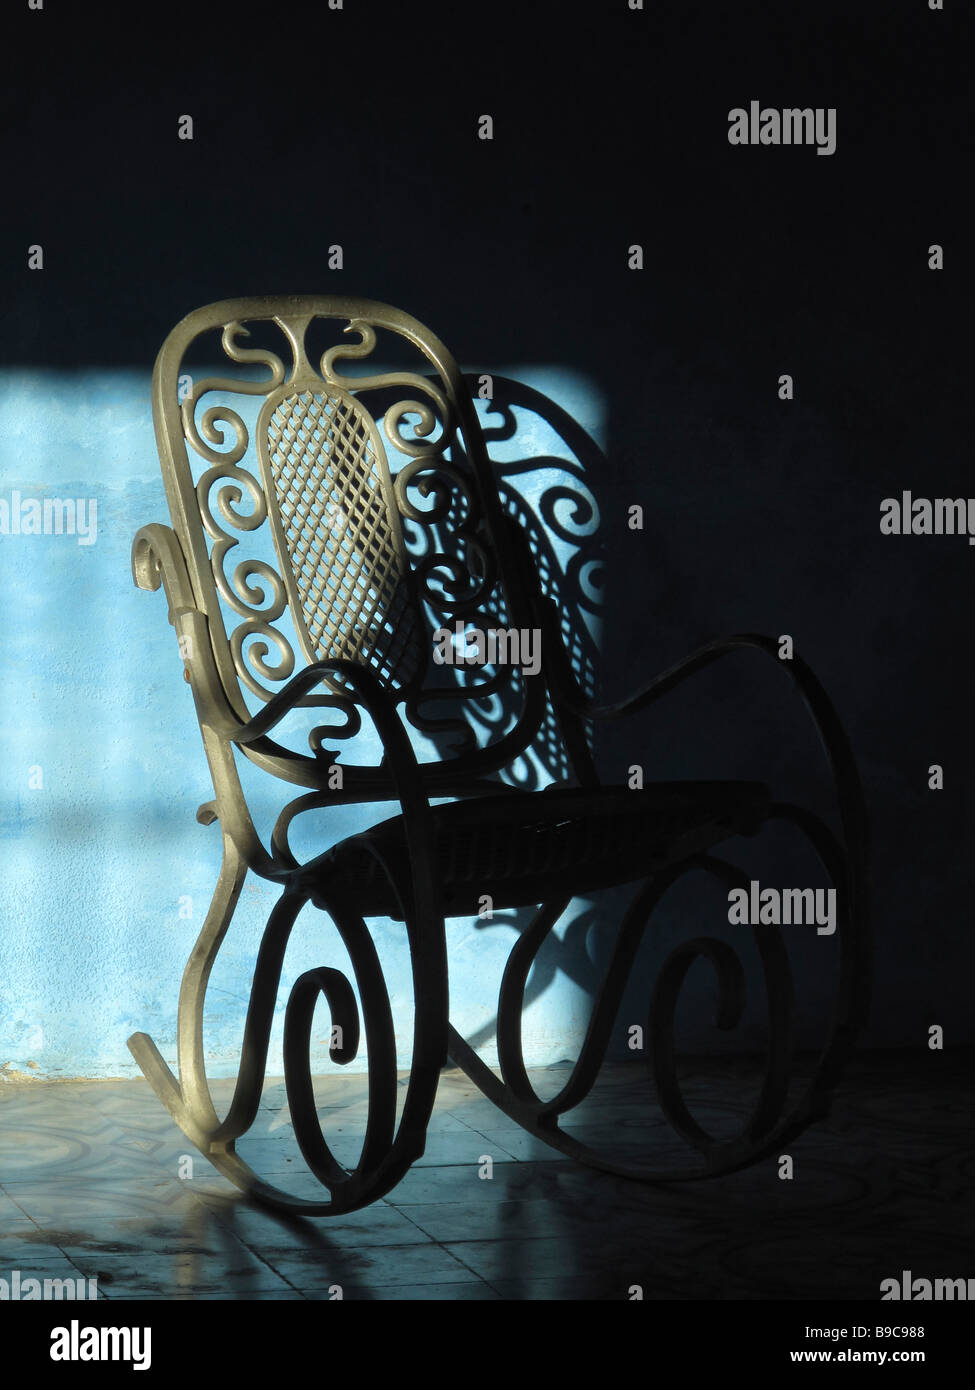 Un fauteuil à bascule en métal, en partie dans l'ombre, contre un mur bleu Banque D'Images